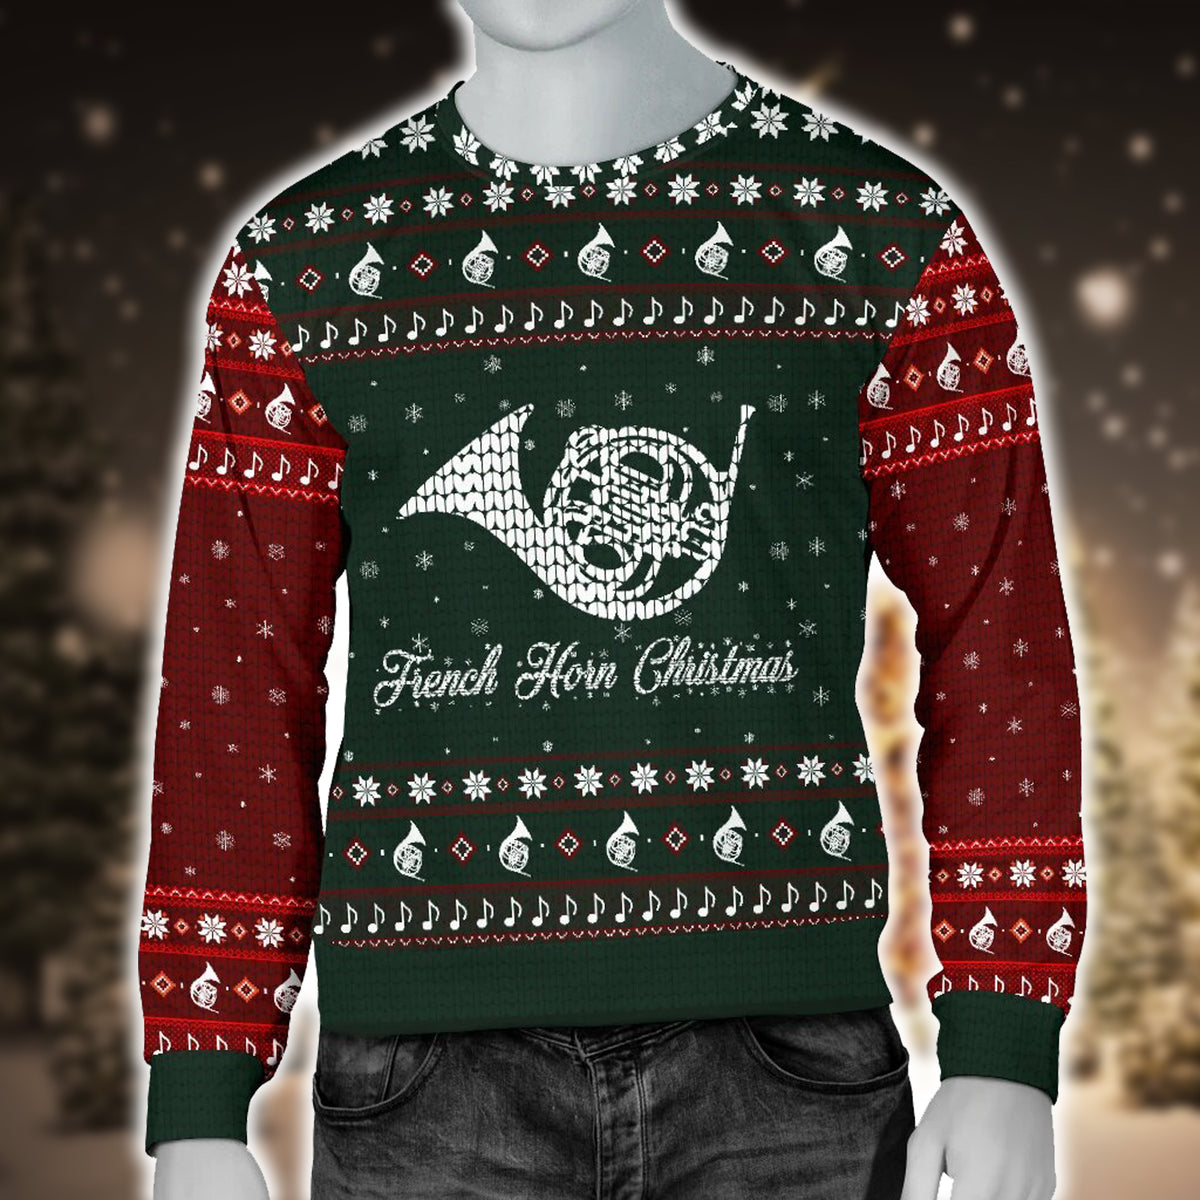 French Horn Christmas Men's Sweater - Artistic Pod